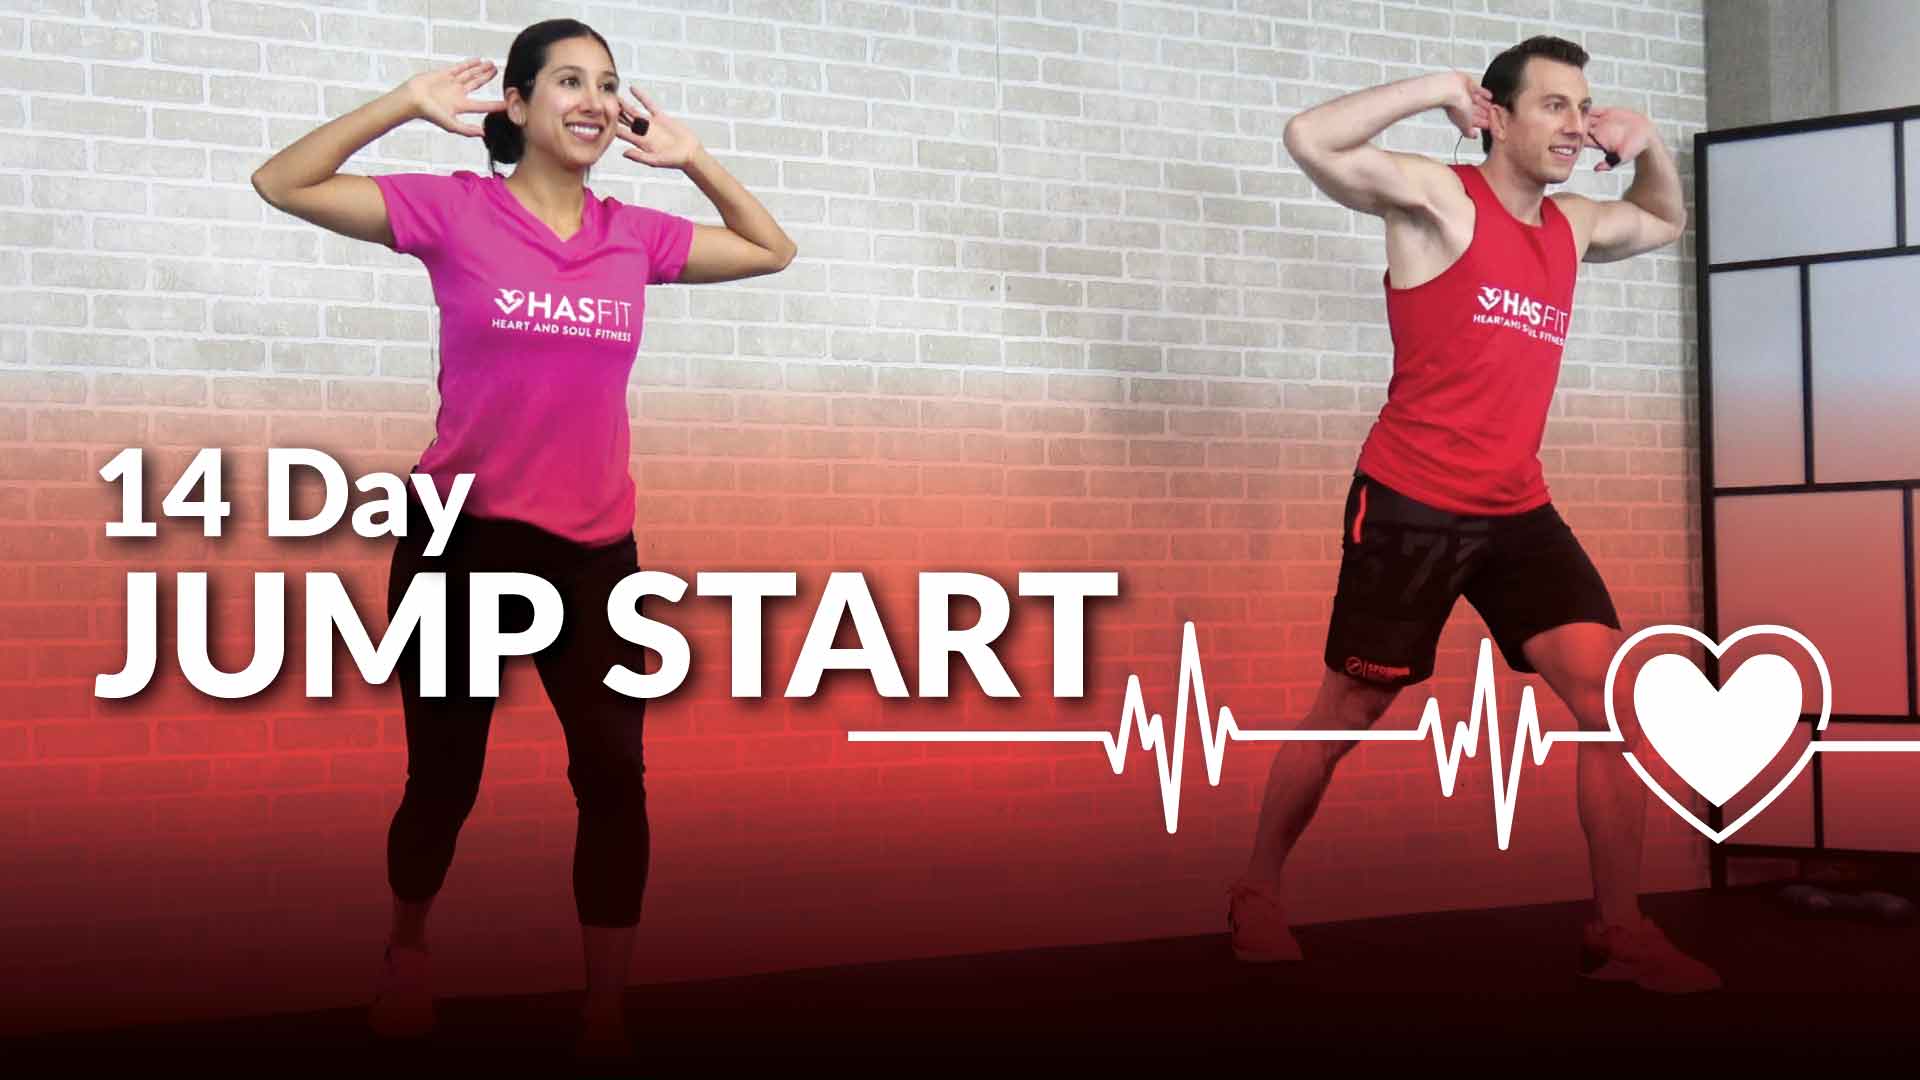 beginner workout program